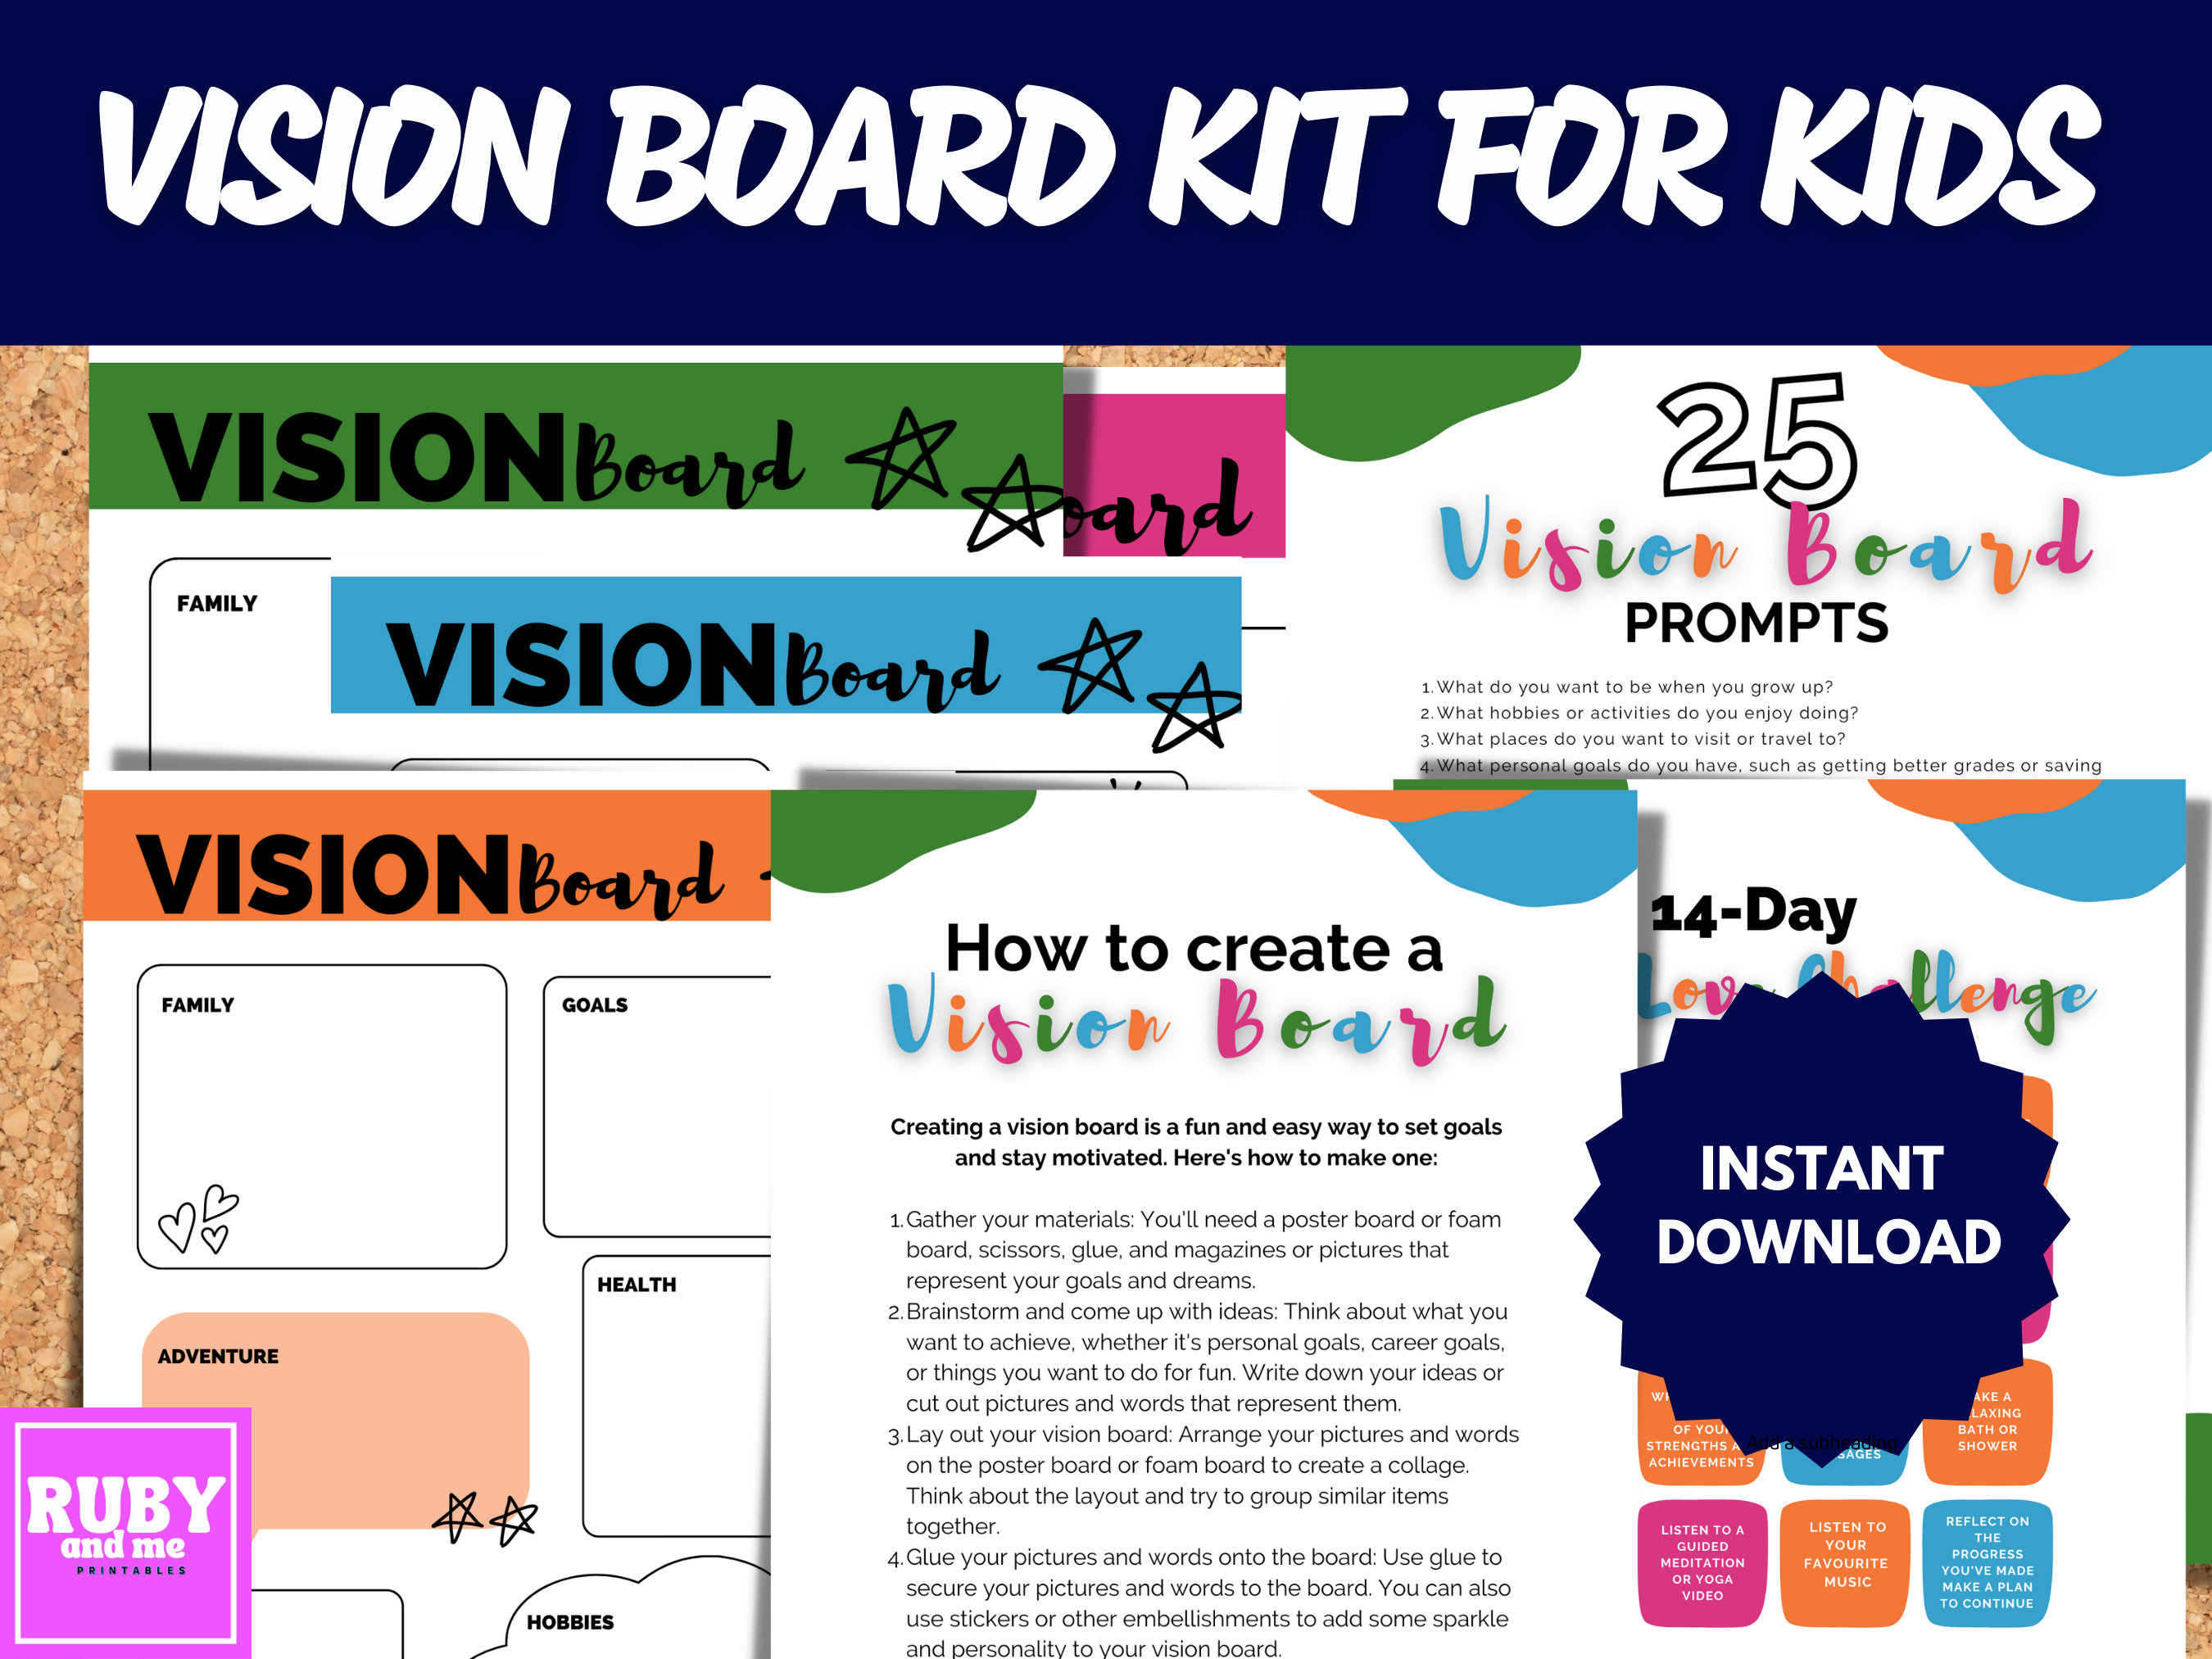 Kids Vision Board Vision Board Vision Board Kit Goal - Etsy UK